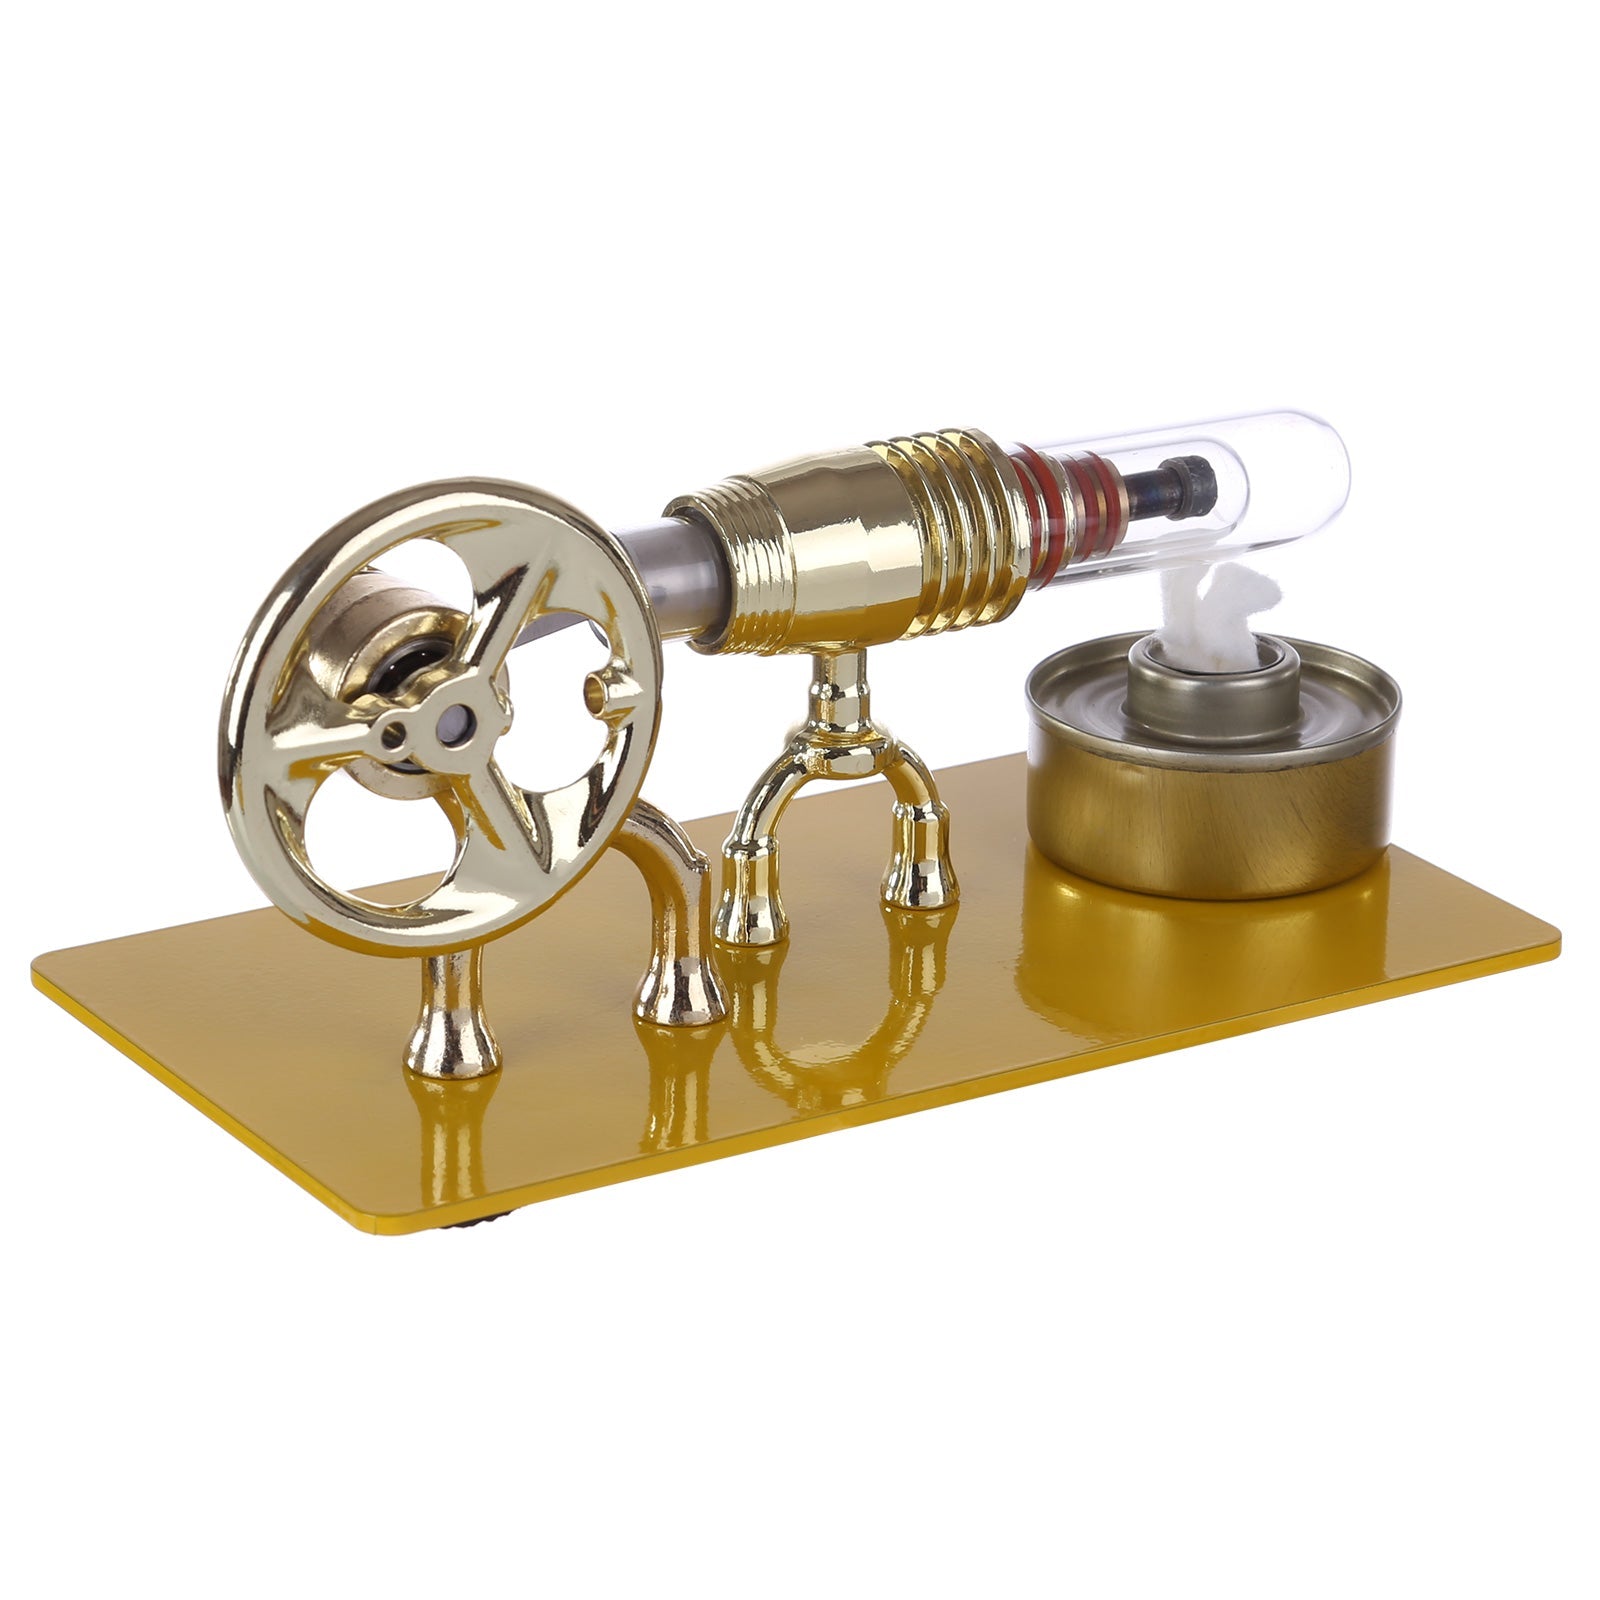 ENJOMOR Single Cylinder Stirling Engine Model Science Educational Toys - Golden